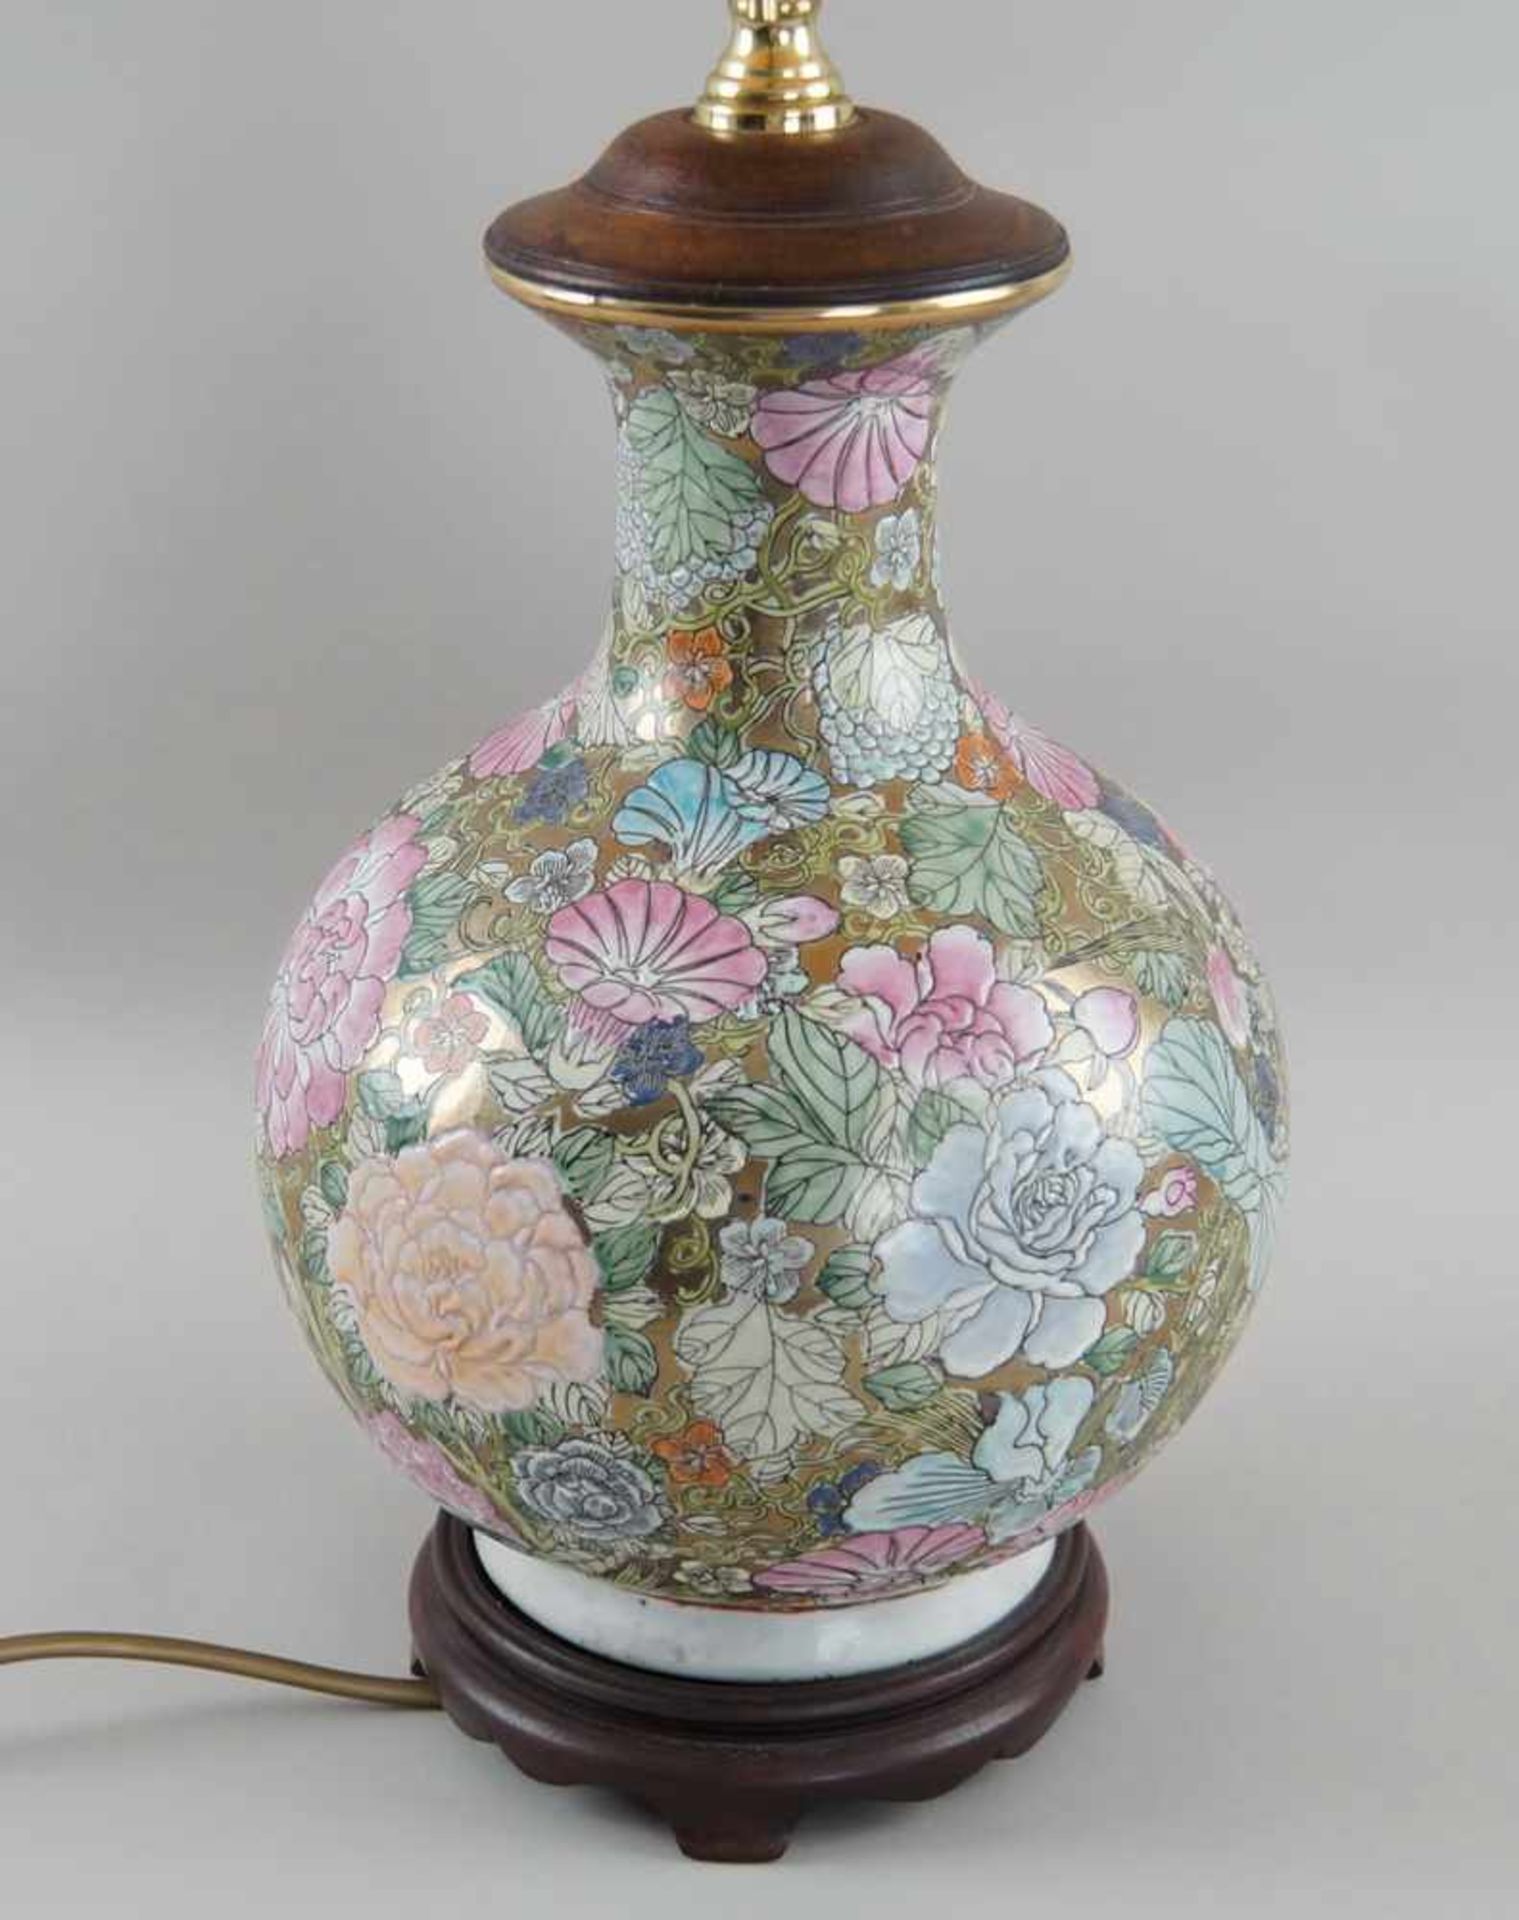 Tischlampe, ehem. asiatische Vase, auf Holzstand, elektrifiziert, mit Schirm, H 90 cm- - -24.00 % - Bild 3 aus 6